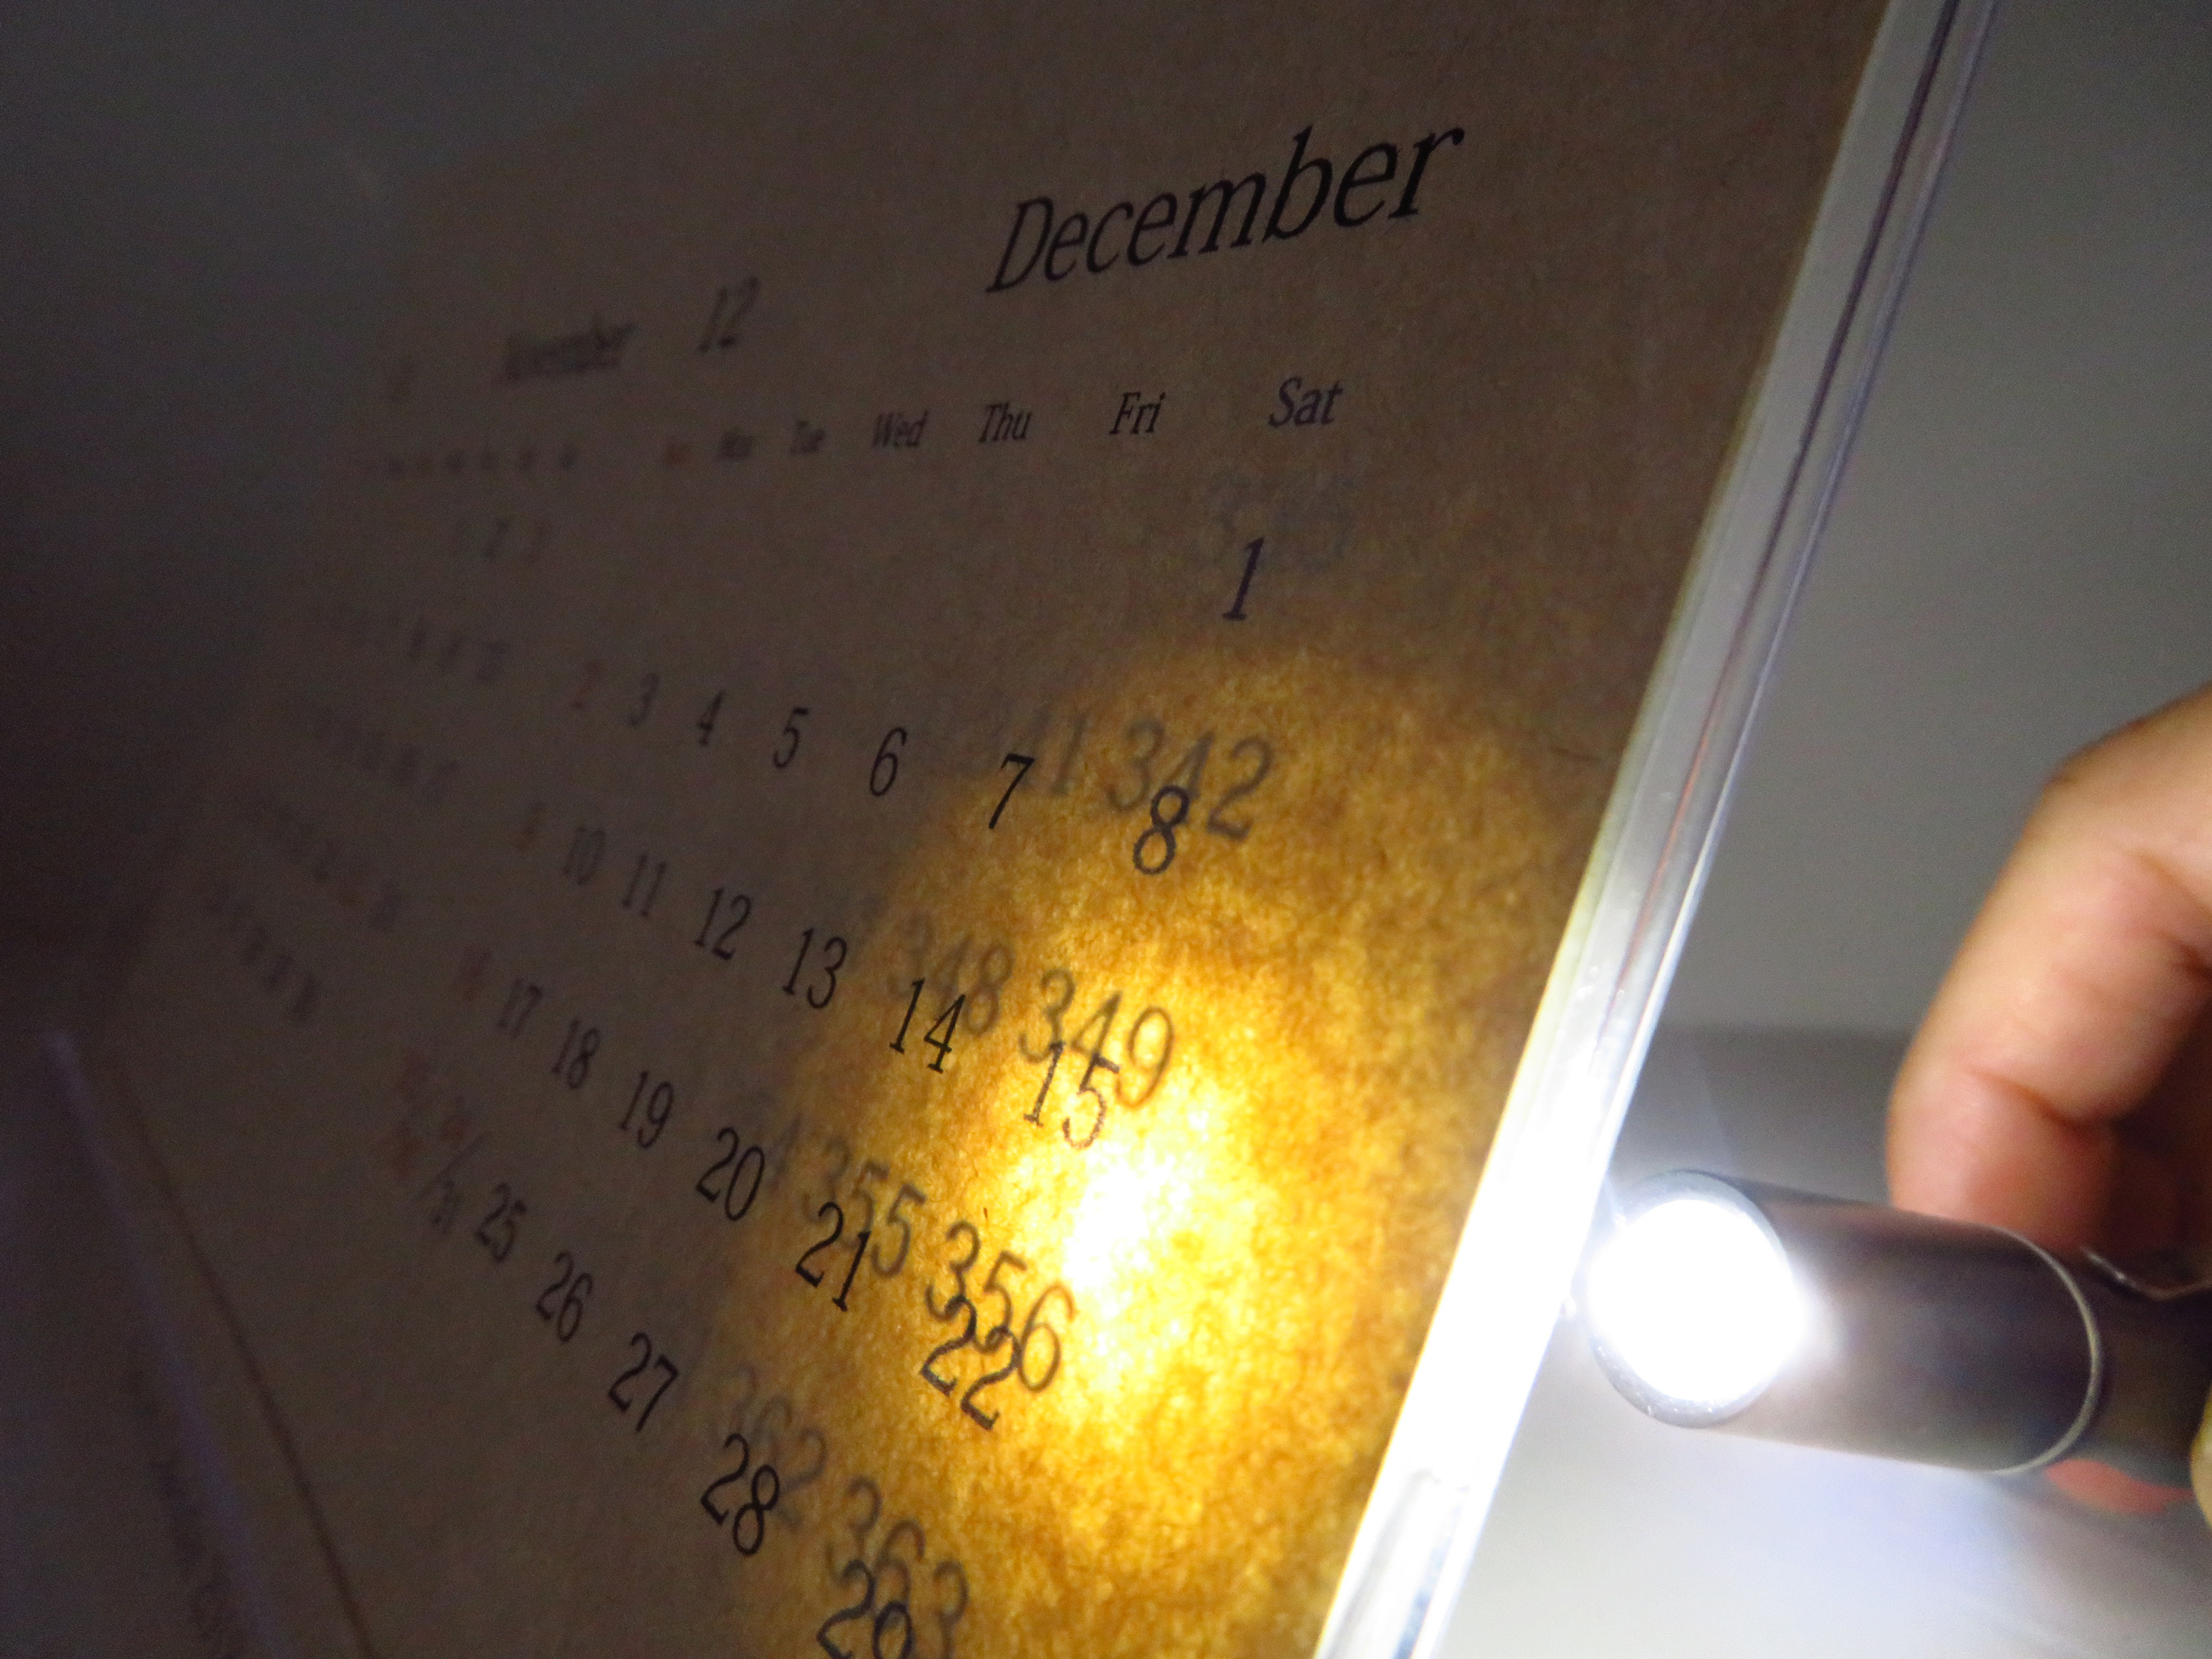 光で数字が浮かび上がる秘密仕掛けの「Secret Calendar 2018」を発売